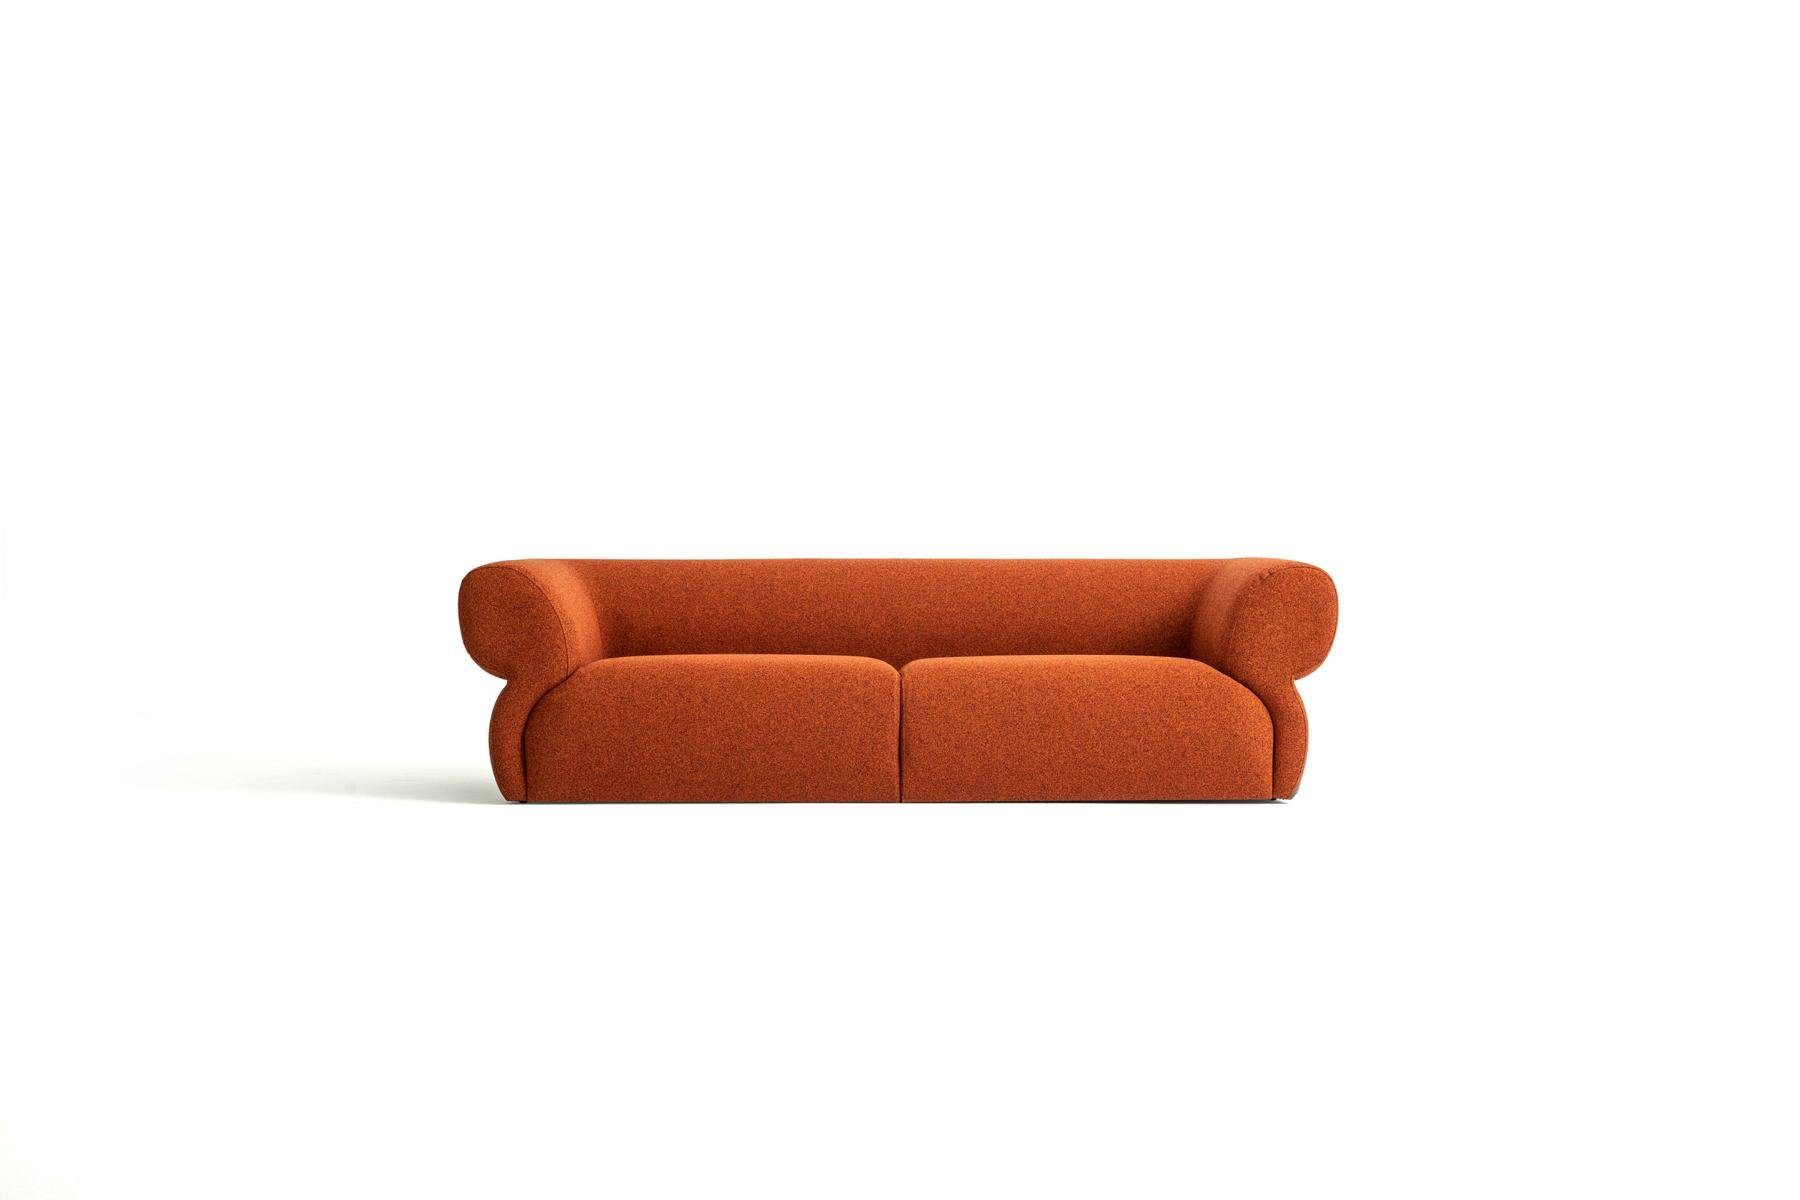 JVmoebel 3-Sitzer Luxus Sofa 3 Sitzer Möbel Wohnzimmer 250cm Design Polstersofa Neu, Made in Europe Orange